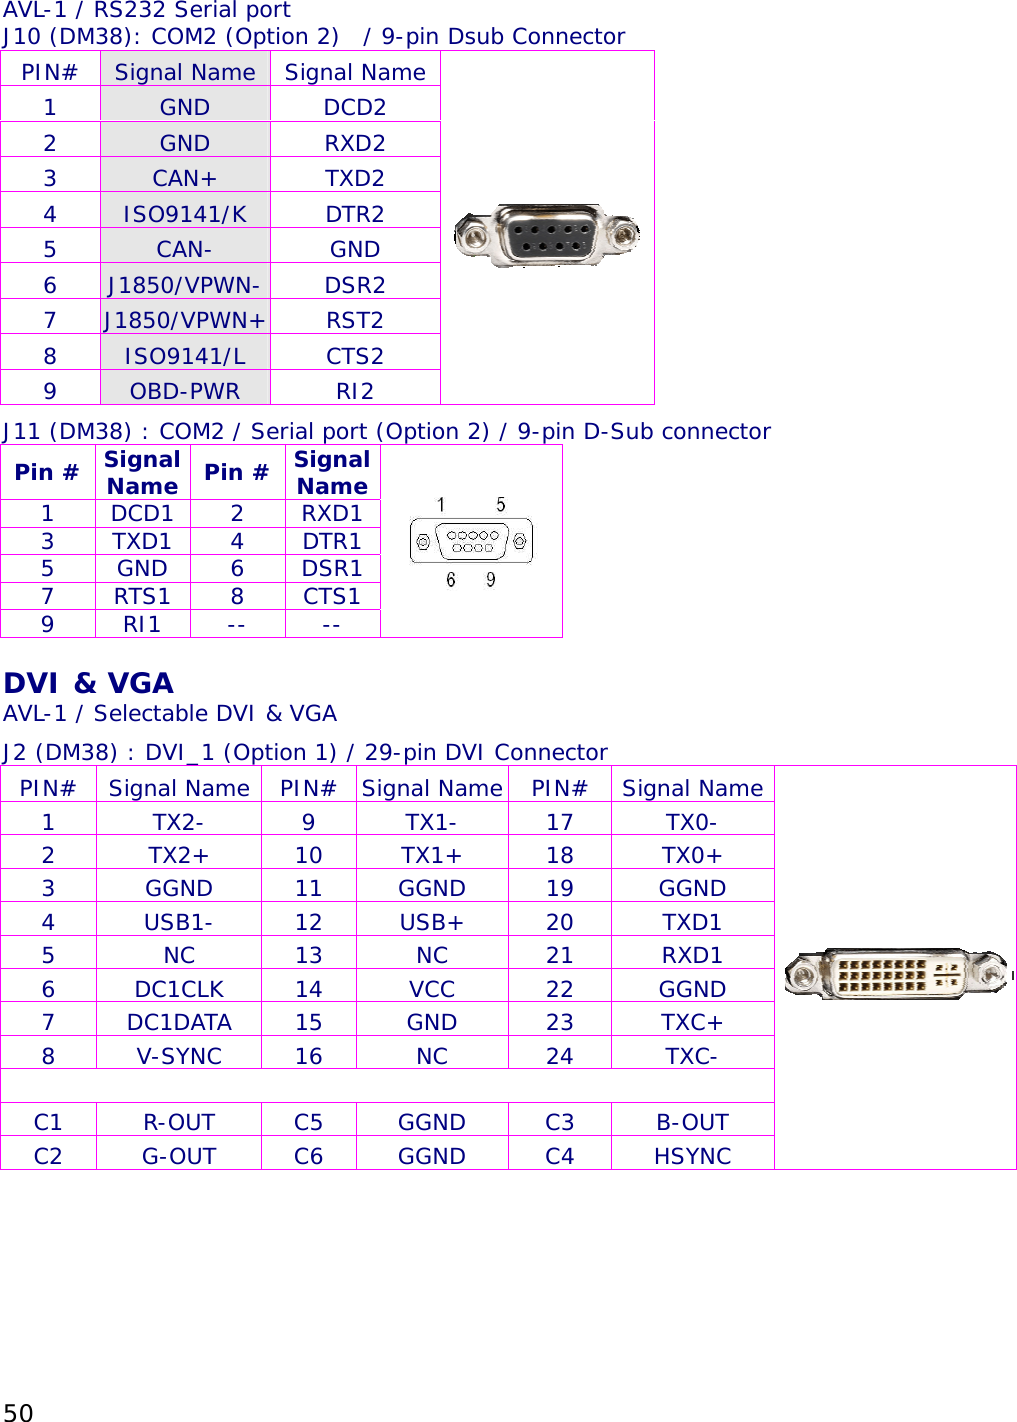 50 AVL-1 / RS232 Serial port J10 (DM38): COM2 (Option 2)  / 9-pin Dsub Connector PIN#  Signal Name  Signal Name 1  GND  DCD2 2  GND  RXD2 3  CAN+  TXD2 4  ISO9141/K  DTR2 5  CAN-  GND 6  J1850/VPWN-  DSR2 7  J1850/VPWN+ RST2 8  ISO9141/L  CTS2 9  OBD-PWR  RI2 J11 (DM38) : COM2 / Serial port (Option 2) / 9-pin D-Sub connector Pin #  Signal Name  Pin #  Signal Name 1 DCD1 2 RXD1 3 TXD1 4 DTR1 5 GND 6 DSR1 7 RTS1 8 CTS1 9 RI1 --  --   DVI &amp; VGA AVL-1 / Selectable DVI &amp; VGA J2 (DM38) : DVI_1 (Option 1) / 29-pin DVI Connector PIN# Signal Name PIN# Signal Name PIN# Signal Name 1 TX2- 9 TX1- 17 TX0- 2 TX2+ 10 TX1+ 18 TX0+ 3 GGND 11 GGND 19 GGND 4 USB1- 12 USB+ 20 TXD1 5 NC 13 NC 21 RXD1 6 DC1CLK 14  VCC  22  GGND 7 DC1DATA 15  GND  23  TXC+ 8 V-SYNC 16  NC  24  TXC-       C1 R-OUT C5 GGND C3 B-OUT C2 G-OUT C6 GGND C4 HSYNC  